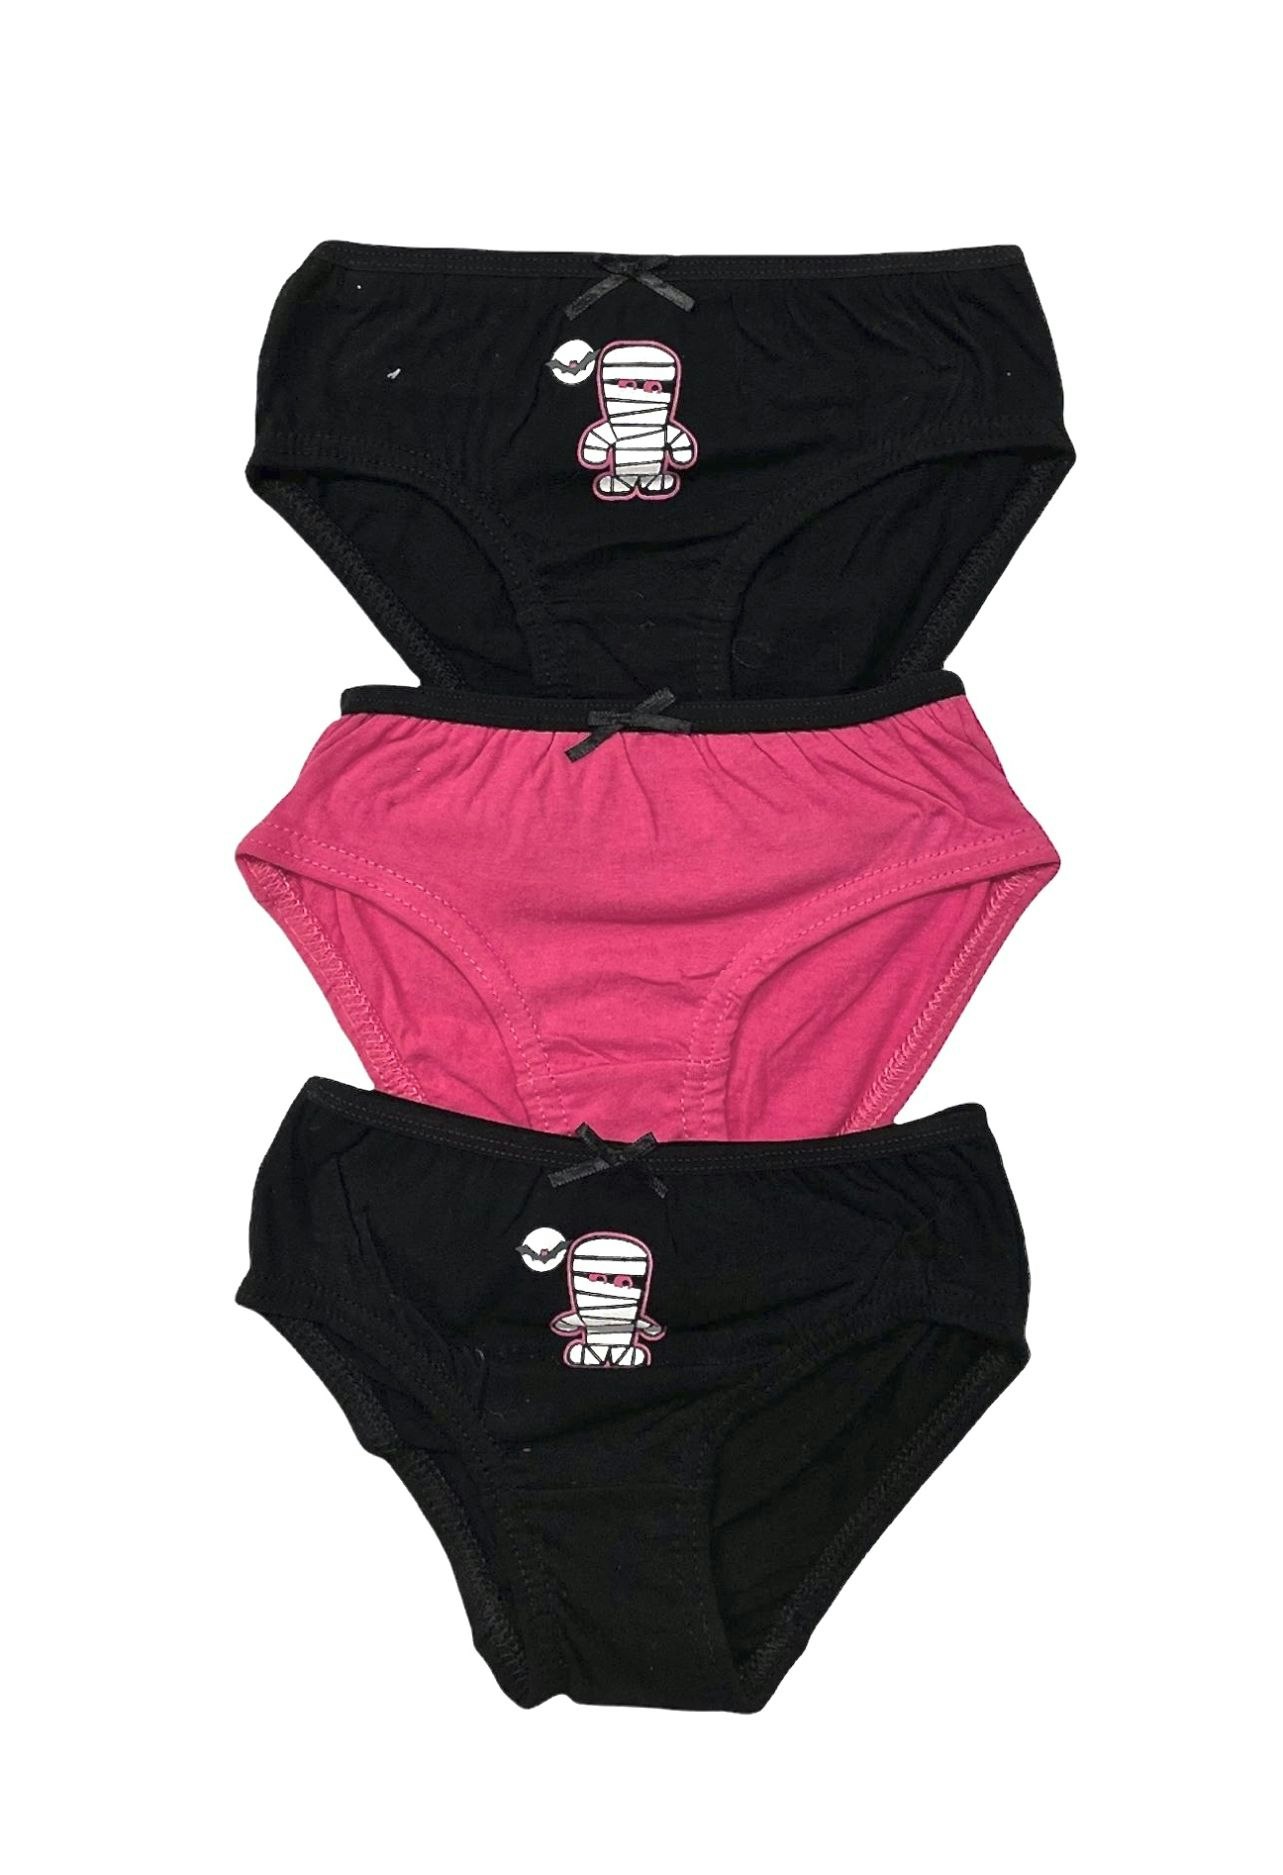 Flicktrosa i 3-pack från Crossbow. Färg: 2 par svarta, 1 par rosa.